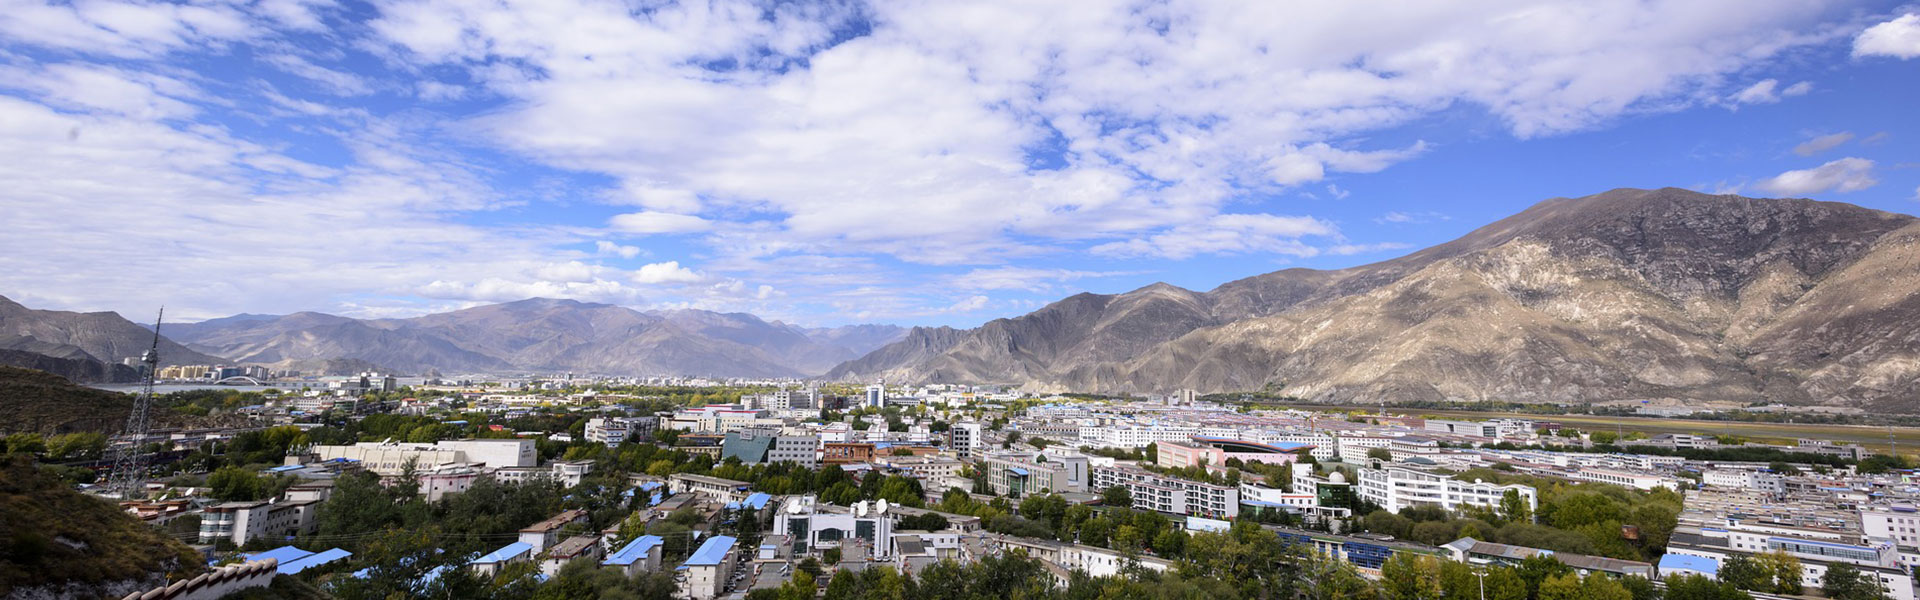 Lhasa Sightseeing Tour 